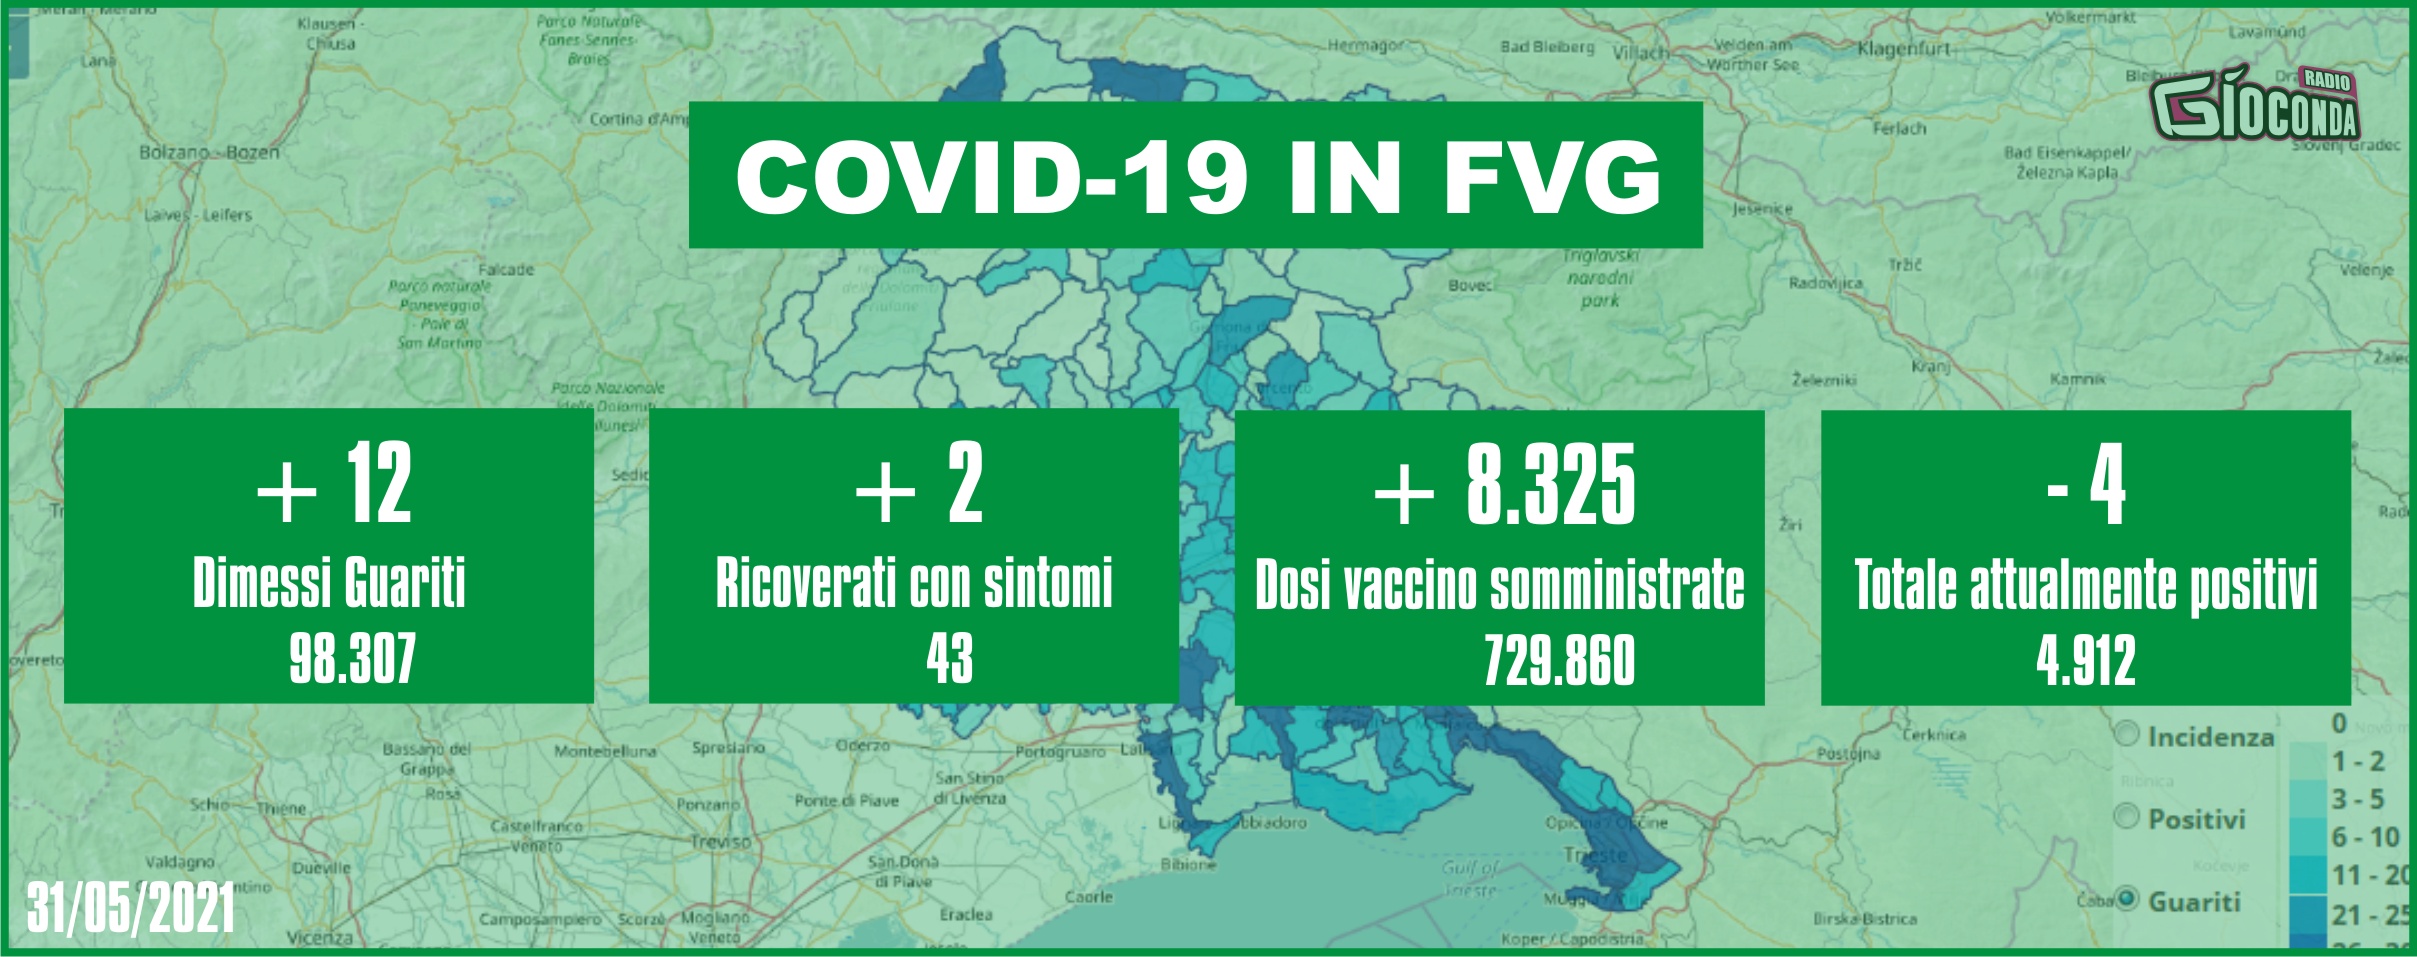 31 maggio 2021 - Aggiornamento casi Covid-19 Dati aggregati quotidiani FRIULI VENEZIA GIULIA